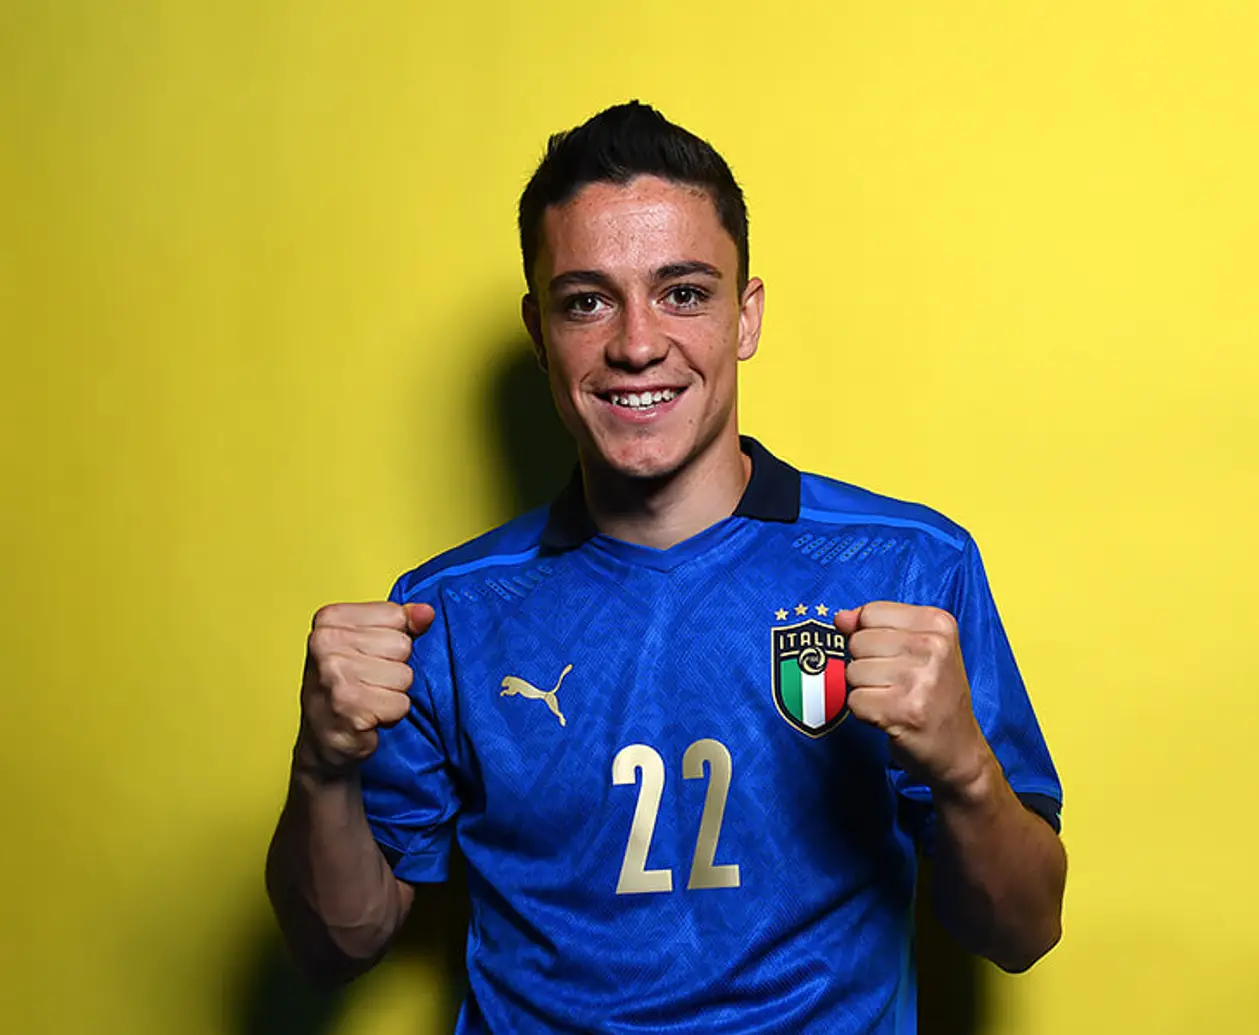 «Надеюсь, стану для Италии новым Скиллачи». Манчини взял на Евро Распадори из «Сассуоло», у которого 0 матчей за сборную